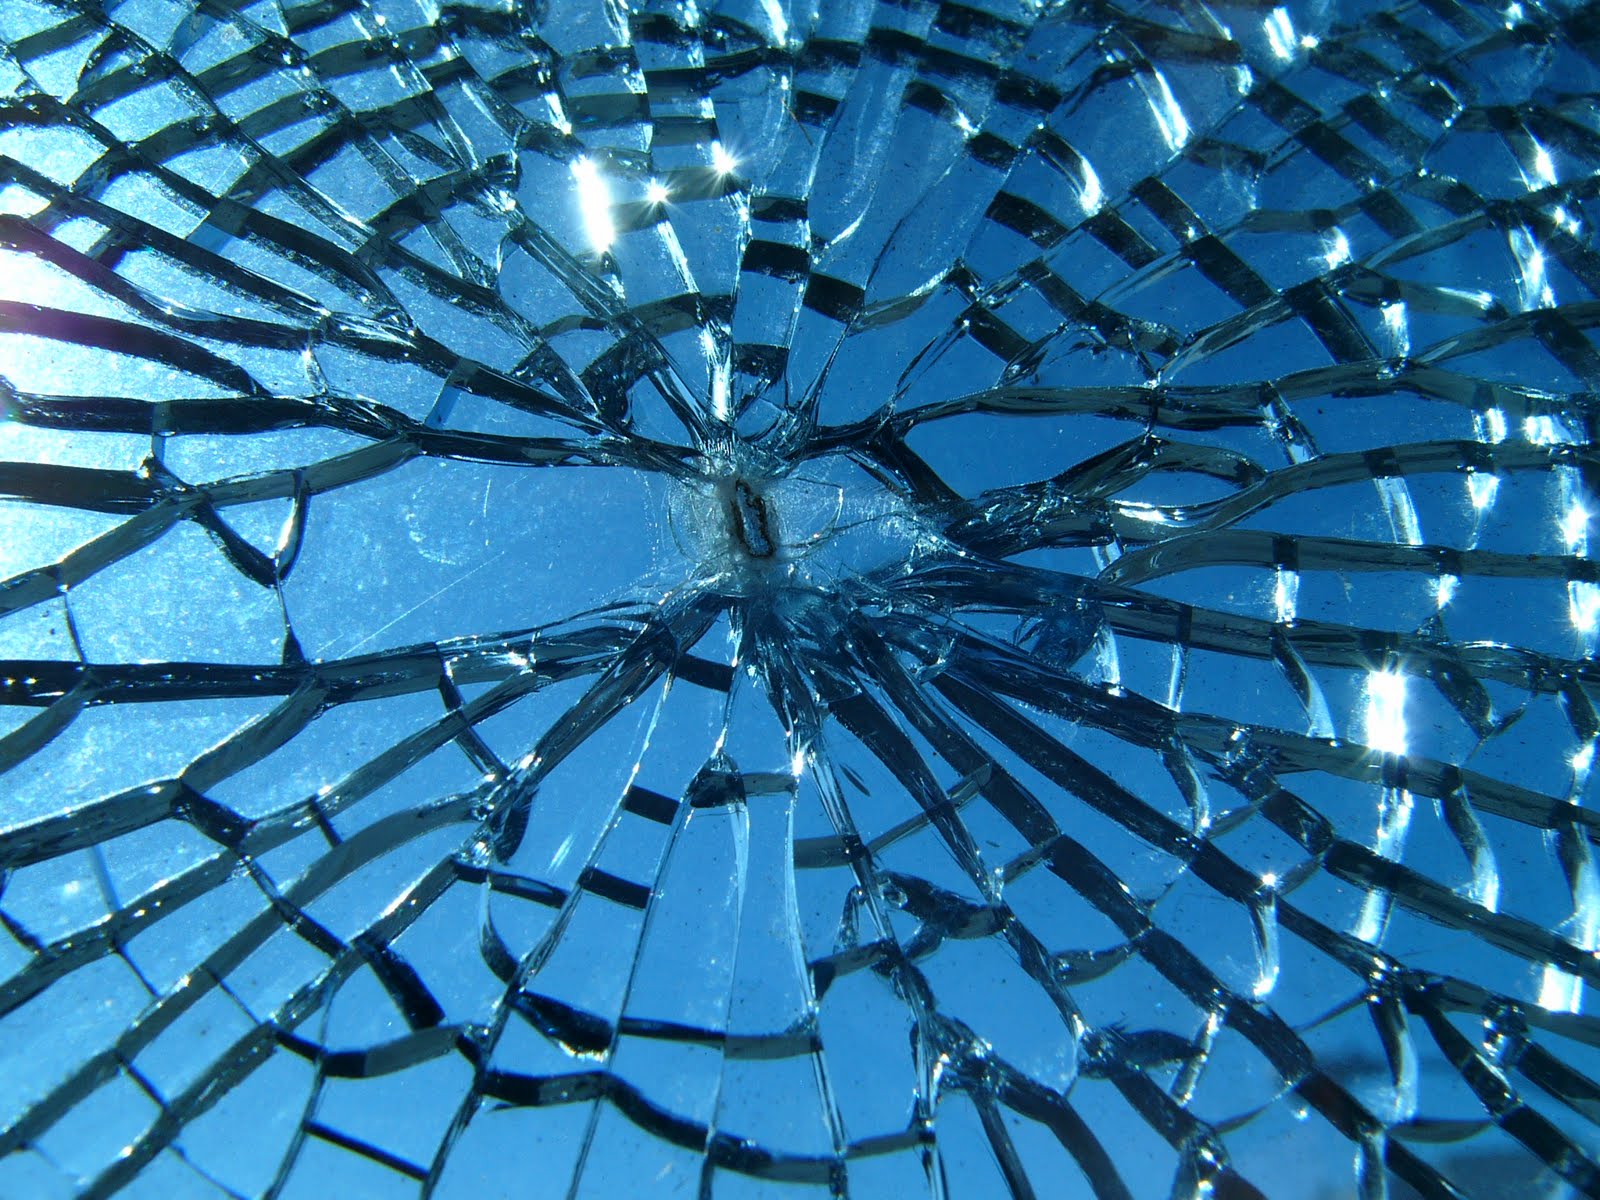 40+] Broken Glass HD Wallpaper - WallpaperSafari